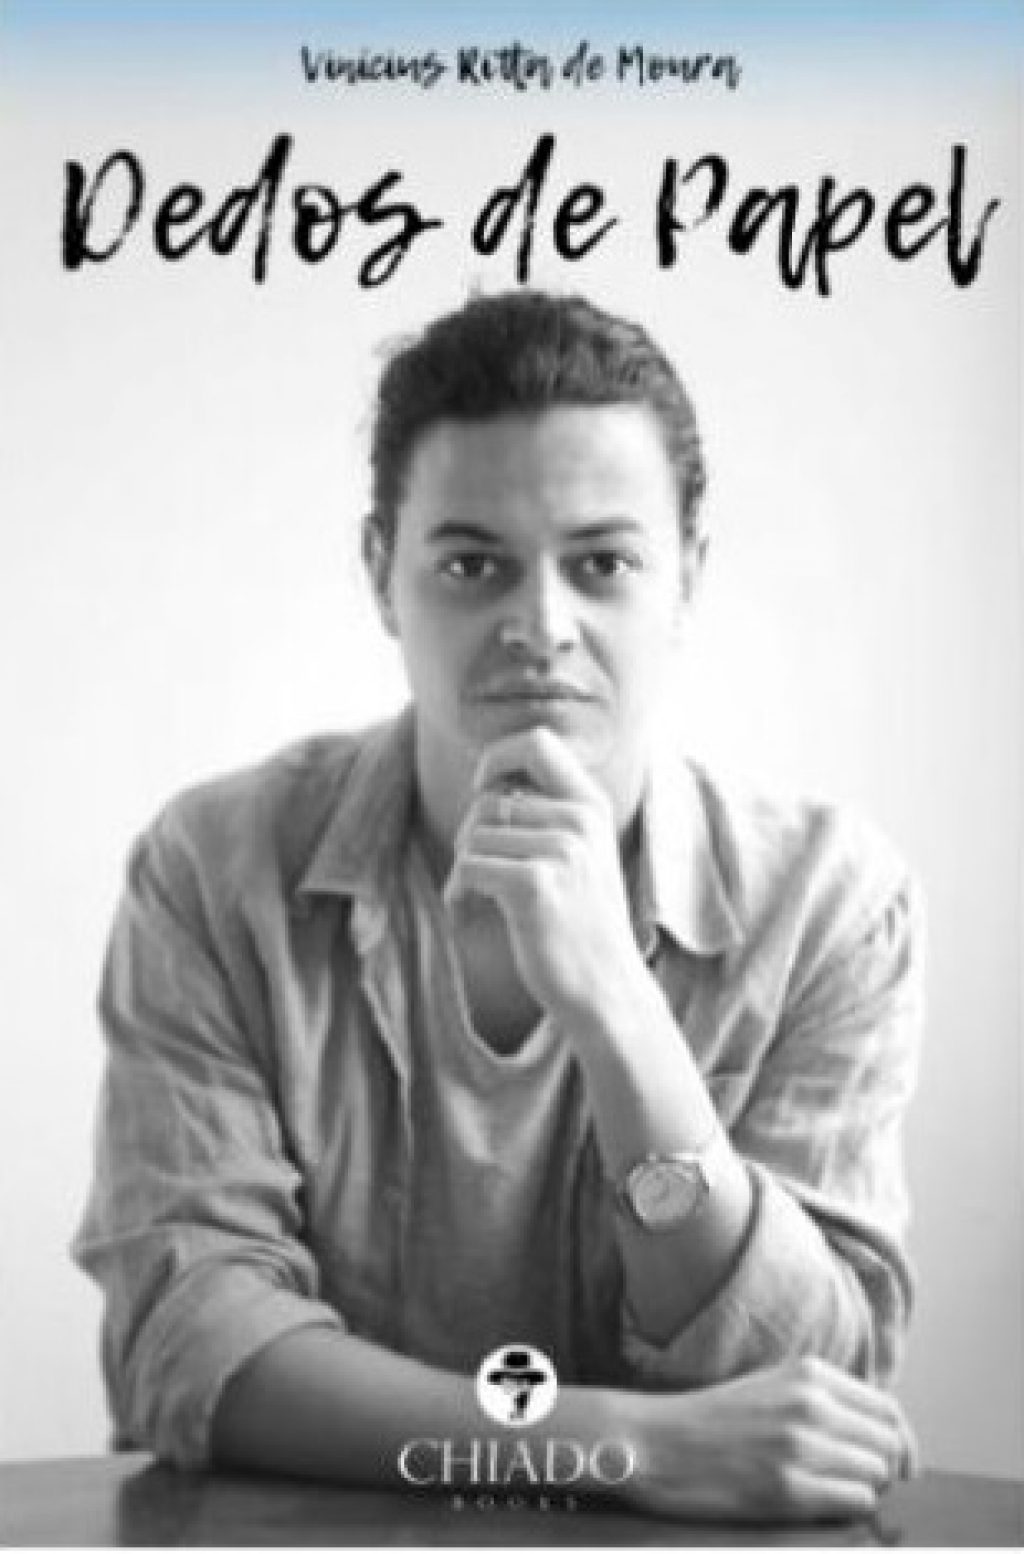 Jornalista de Carazinho lança obra literária em Portugal